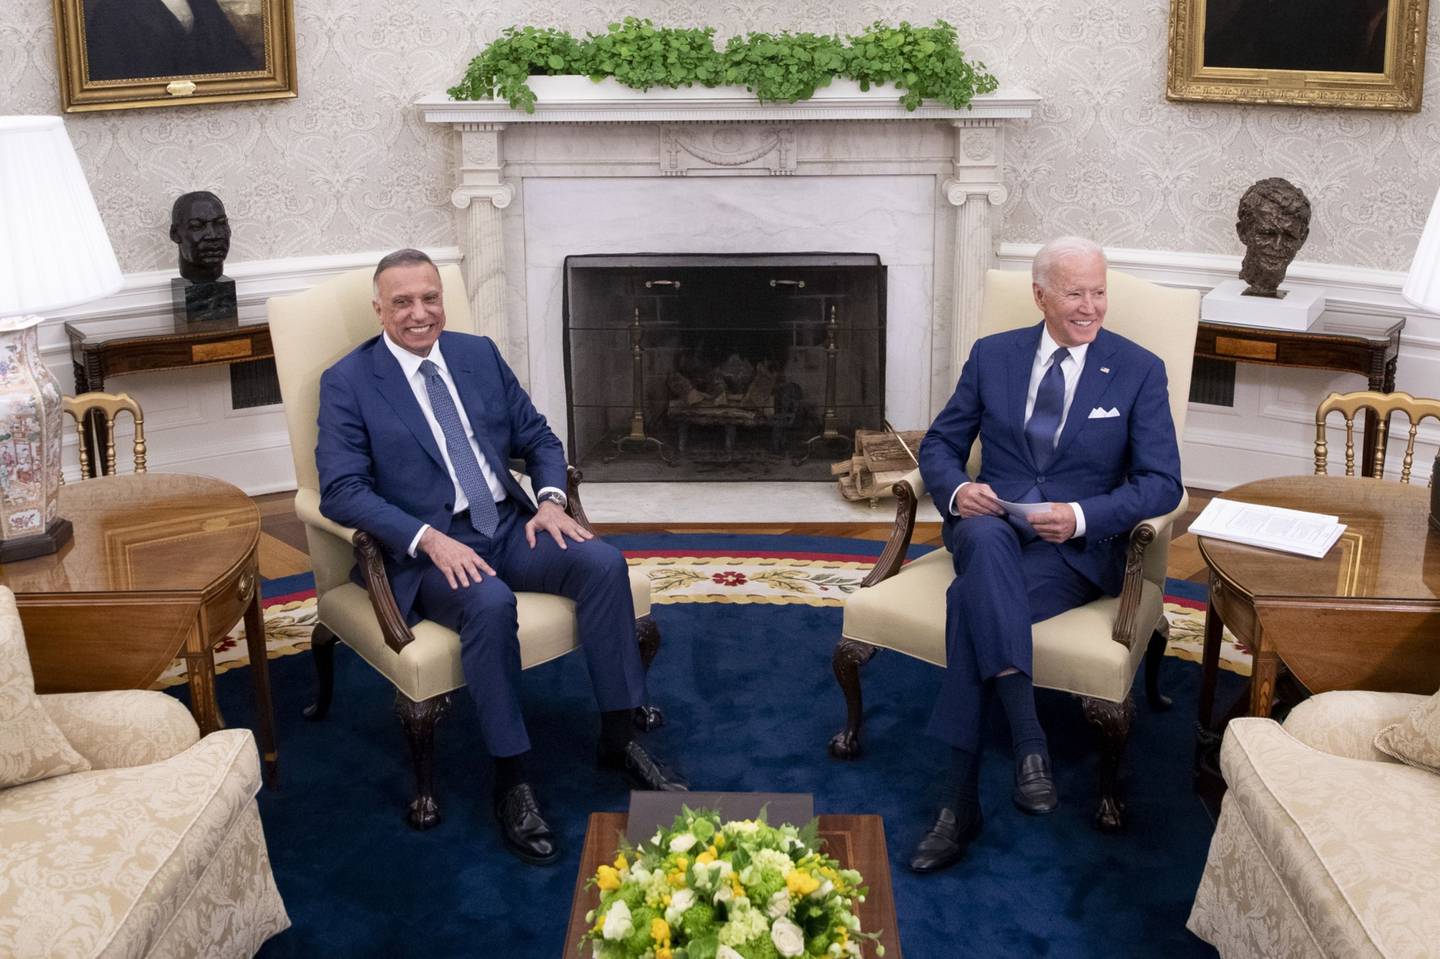 El presidente de Estados Unidos, Joe Biden, a la derecha, se reúne con Mustafa Al-Kadhimi, primer ministro de Irak, en el Despacho Oval de la Casa Blanca en Washington, D.C., Estados Unidos, el lunes 26 de julio de 2021. Biden y Al-Kadhimi tienen previsto anunciar que la misión de combate estadounidense en Irak terminará a finales de año, aunque se espera que Estados Unidos siga teniendo presencia militar sobre el terreno. Fotógrafo: Tom Brenner/The New York Times/Bloomberg